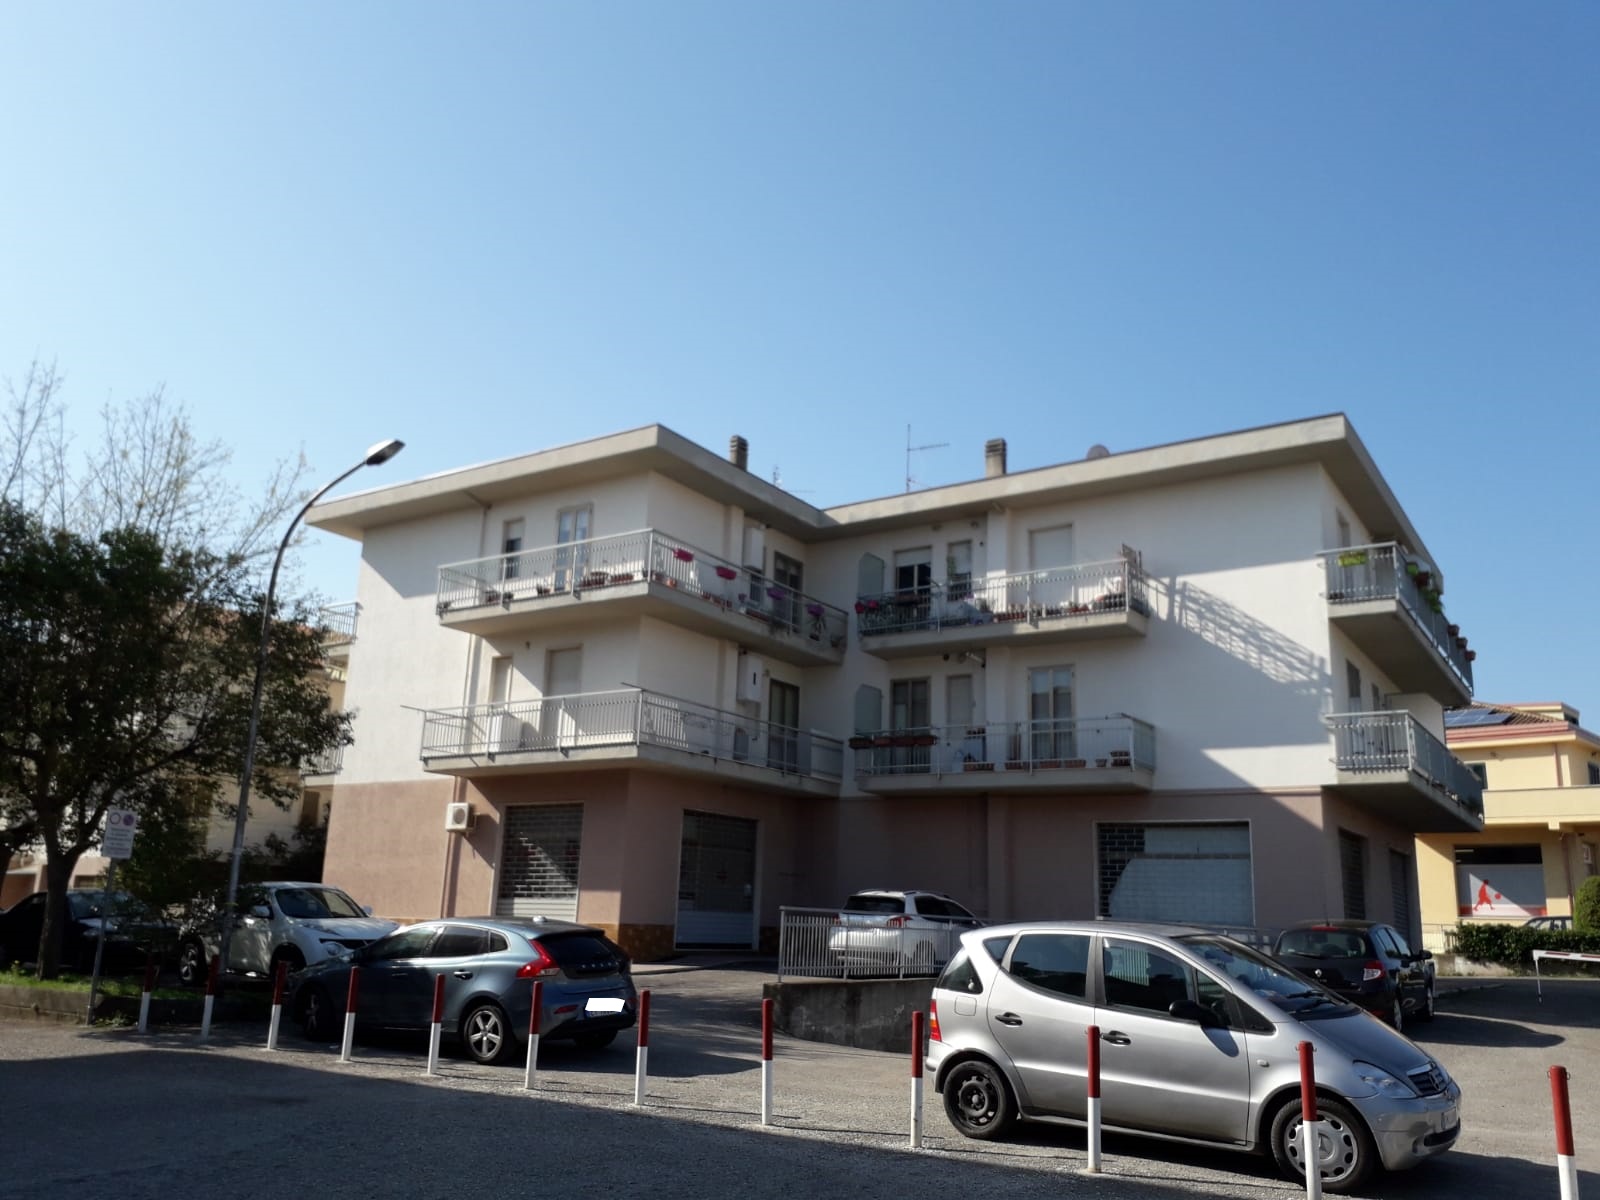 rif 1119 Casalbordino (CH) – Bellissimo appartamento arredato – € 75000 trattabili